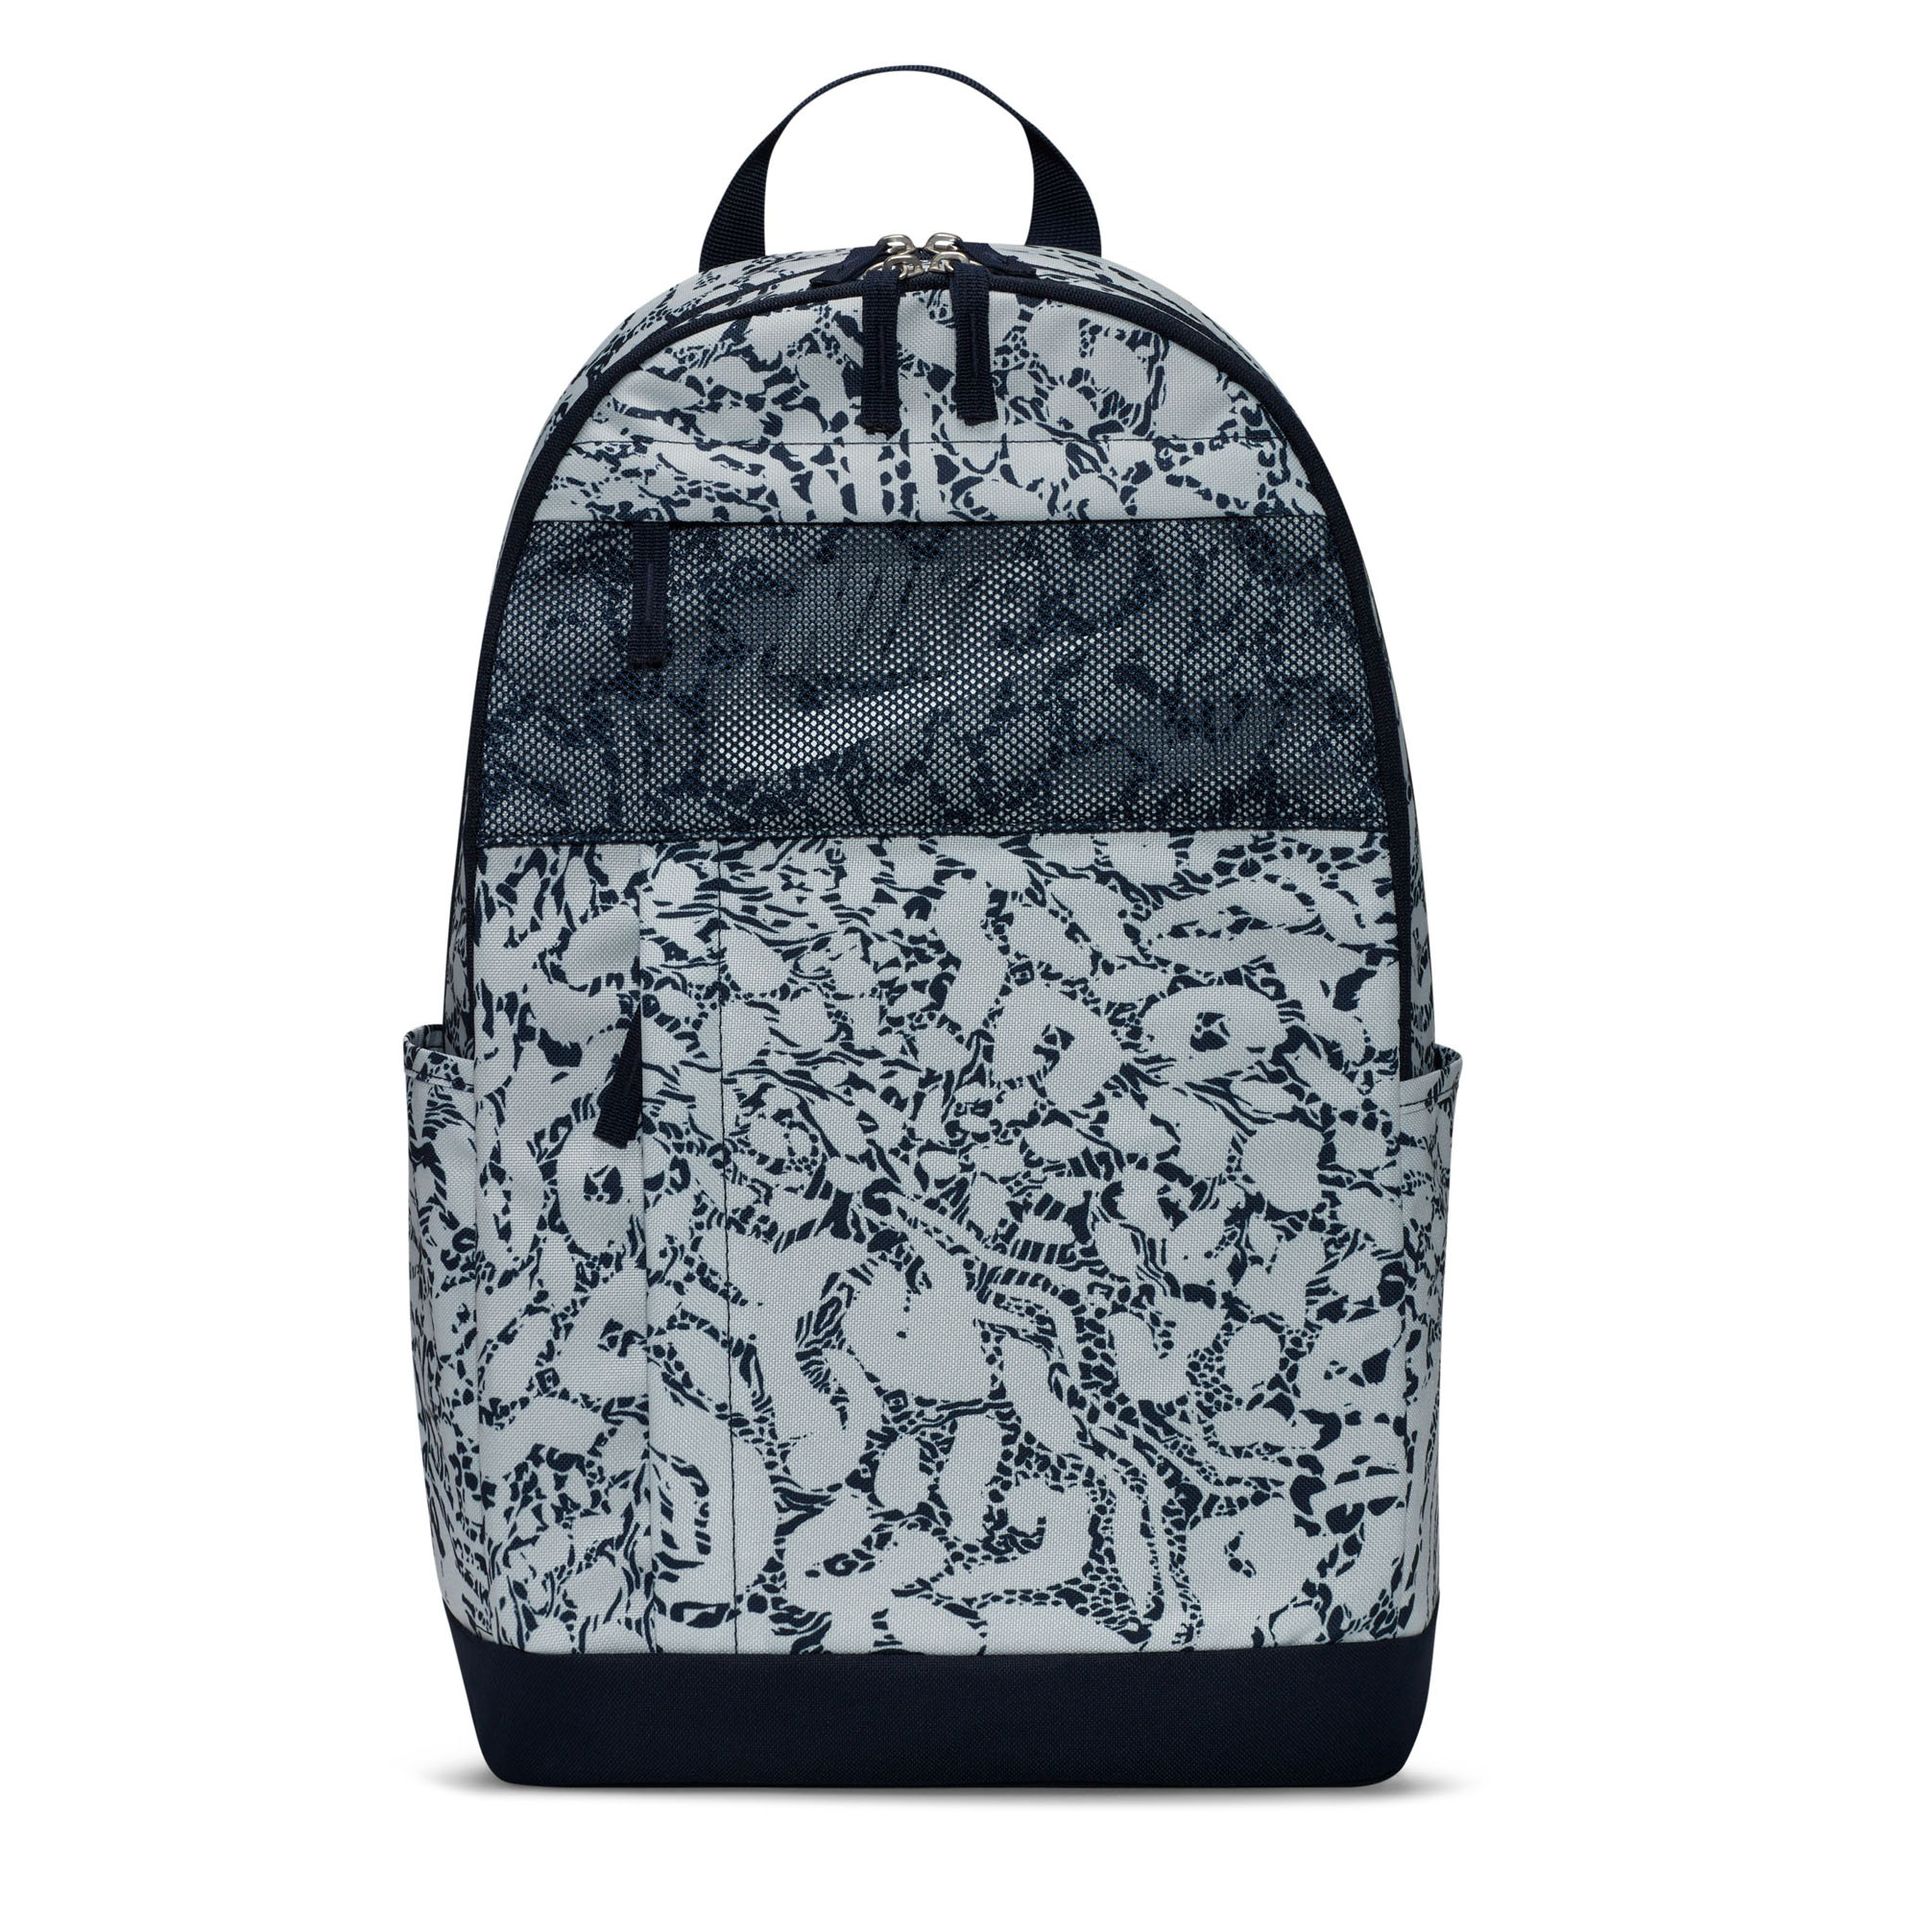 Фото - Шкільний рюкзак (ранець) Nike Plecak szkolny  Elemental DQ5764 